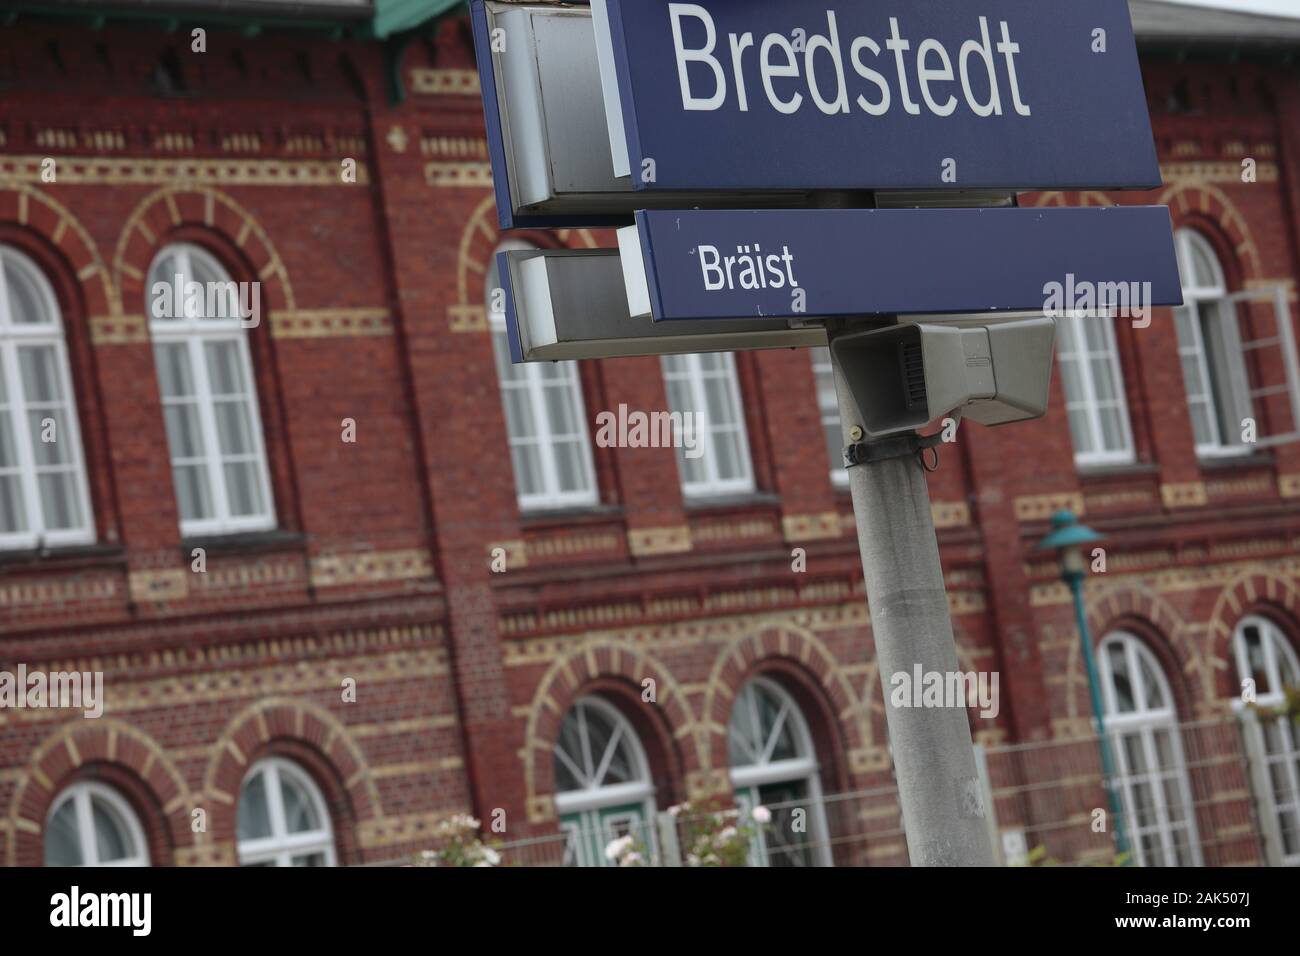 Bredstedt: Zweisprachige Begrüßung am Bahnhof, Nordseeküste | usage worldwide Stock Photo